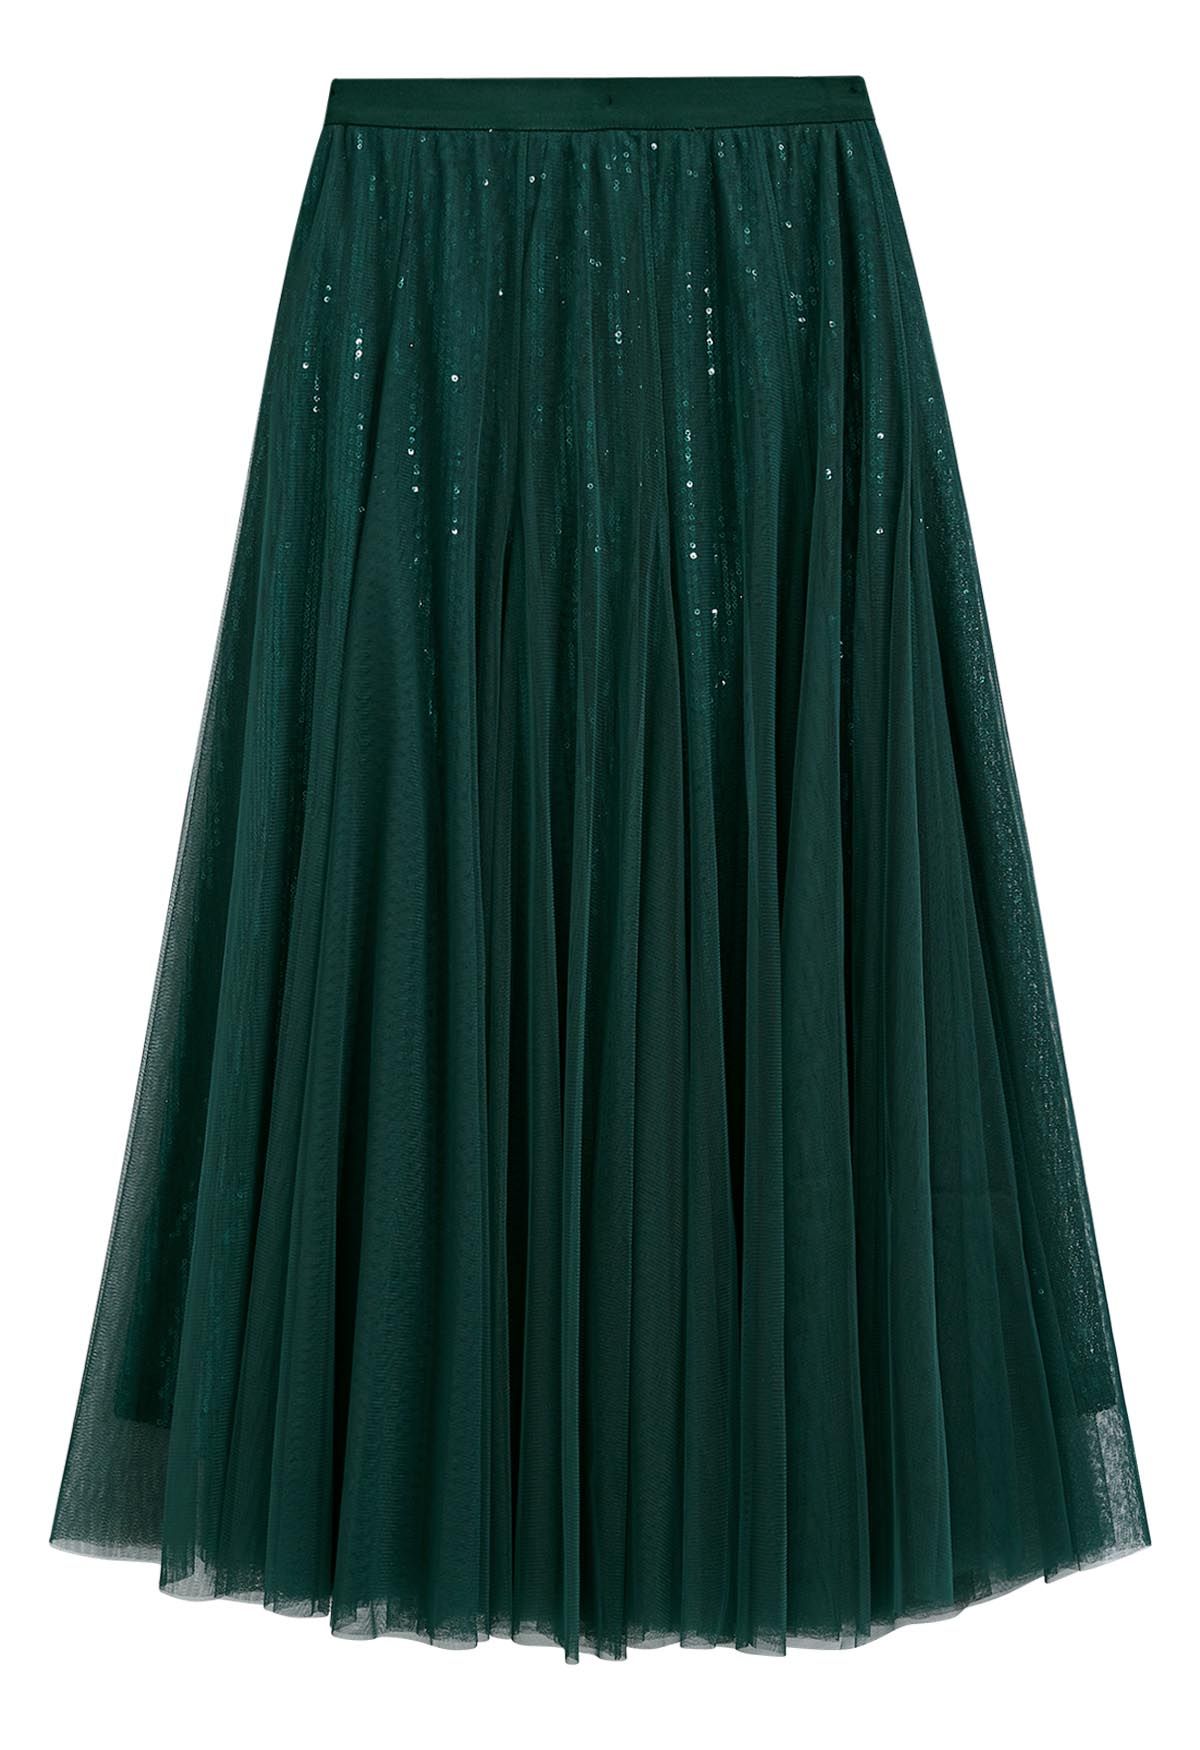 Falda midi de tul y malla con lentejuelas deslumbrantes en verde oscuro